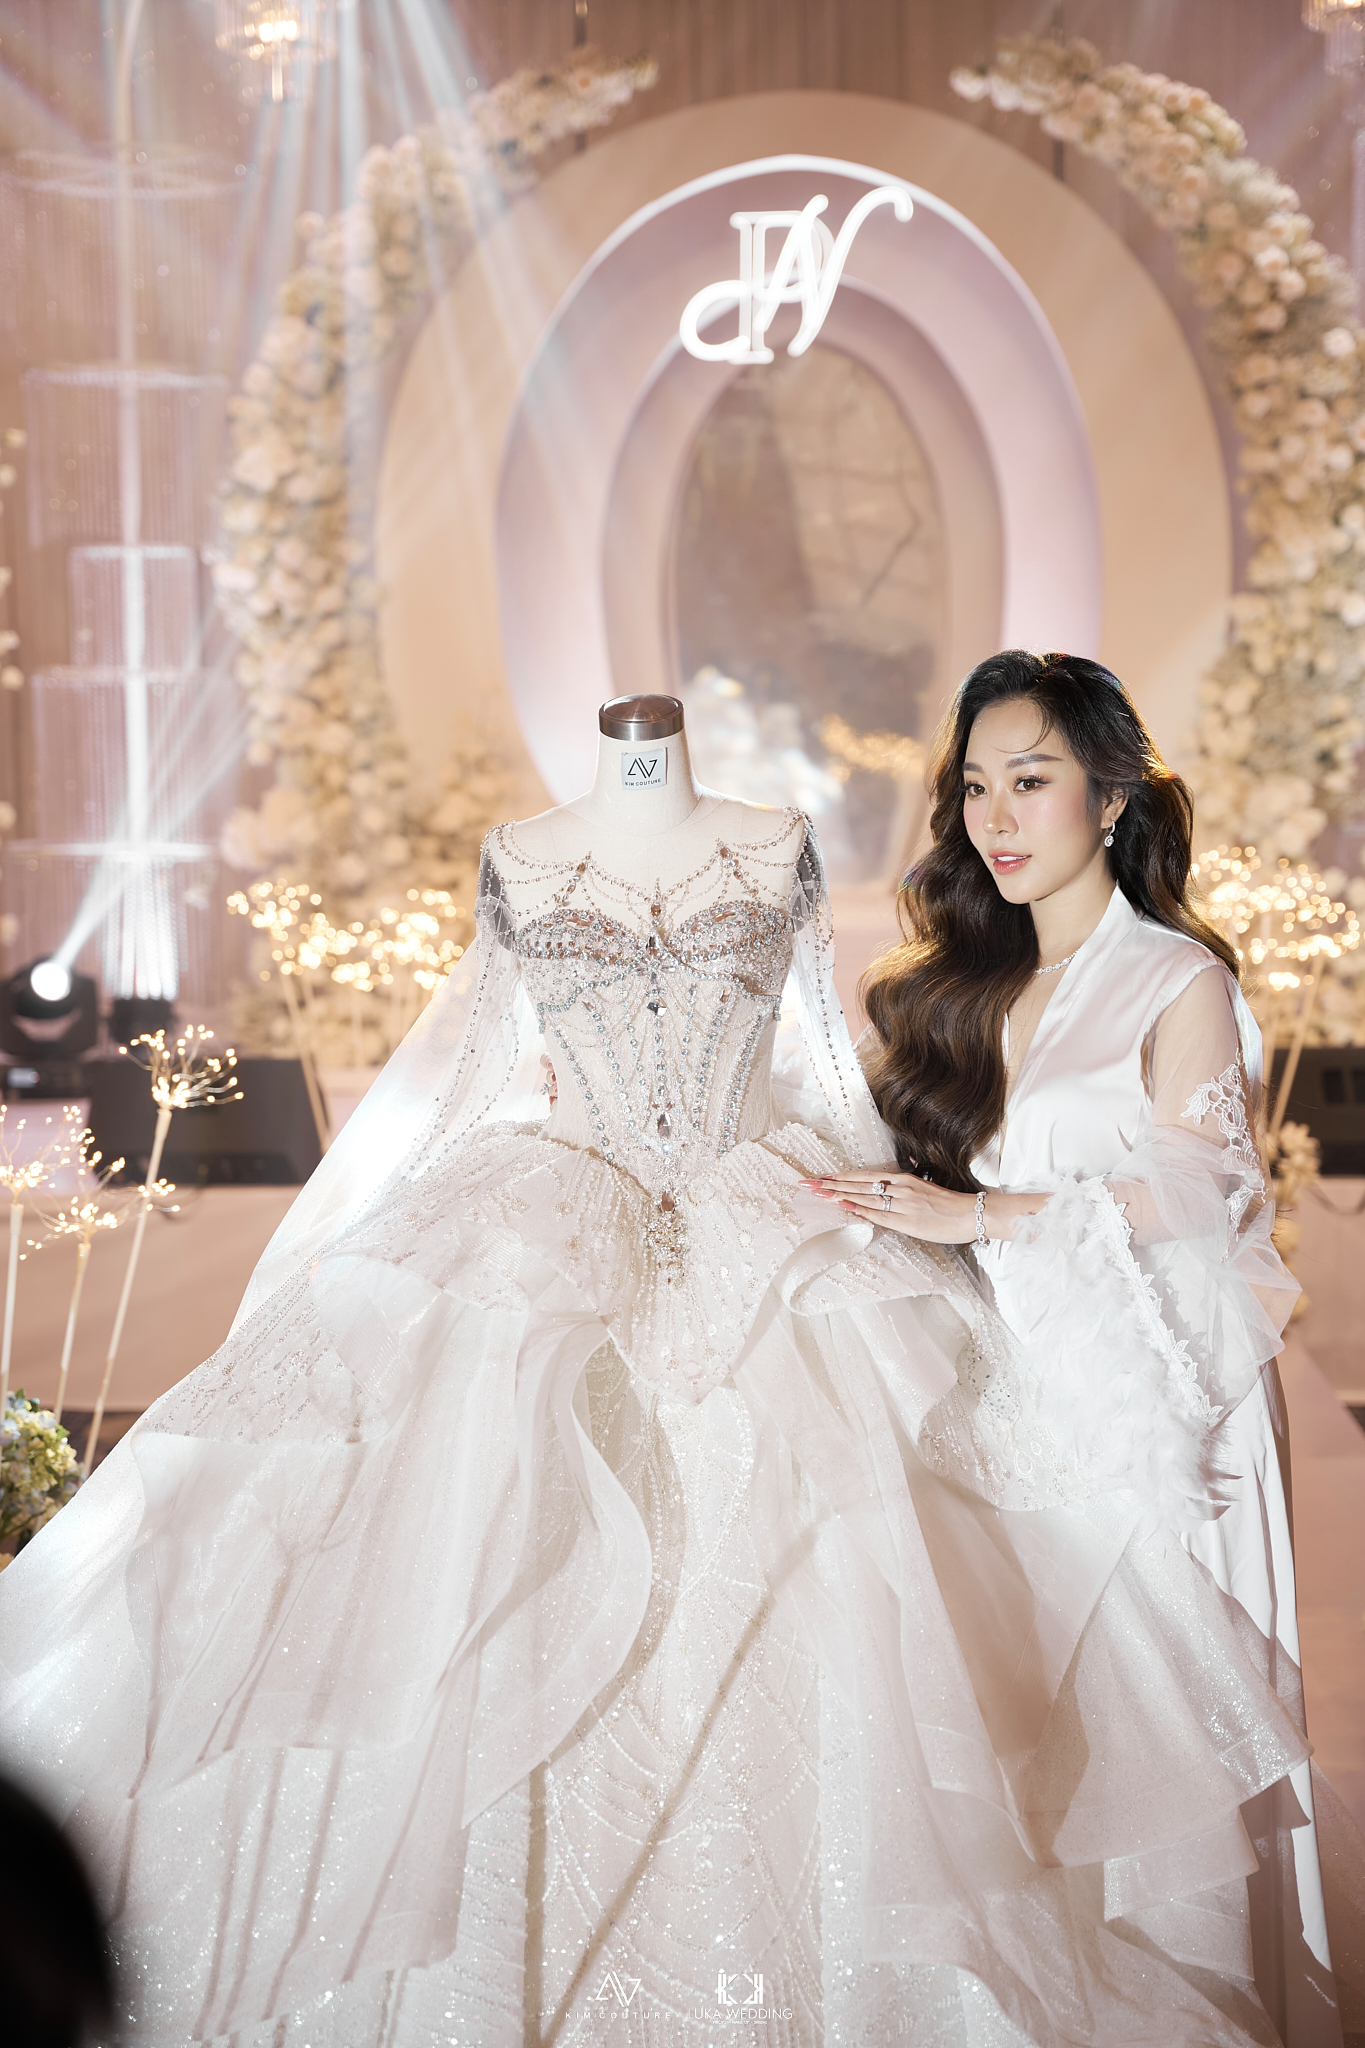 Cận cảnh 3 chiếc váy cưới hàng trăm triệu của bà xã TiTi (HKT) trong hôn lễ xa hoa - ảnh 1